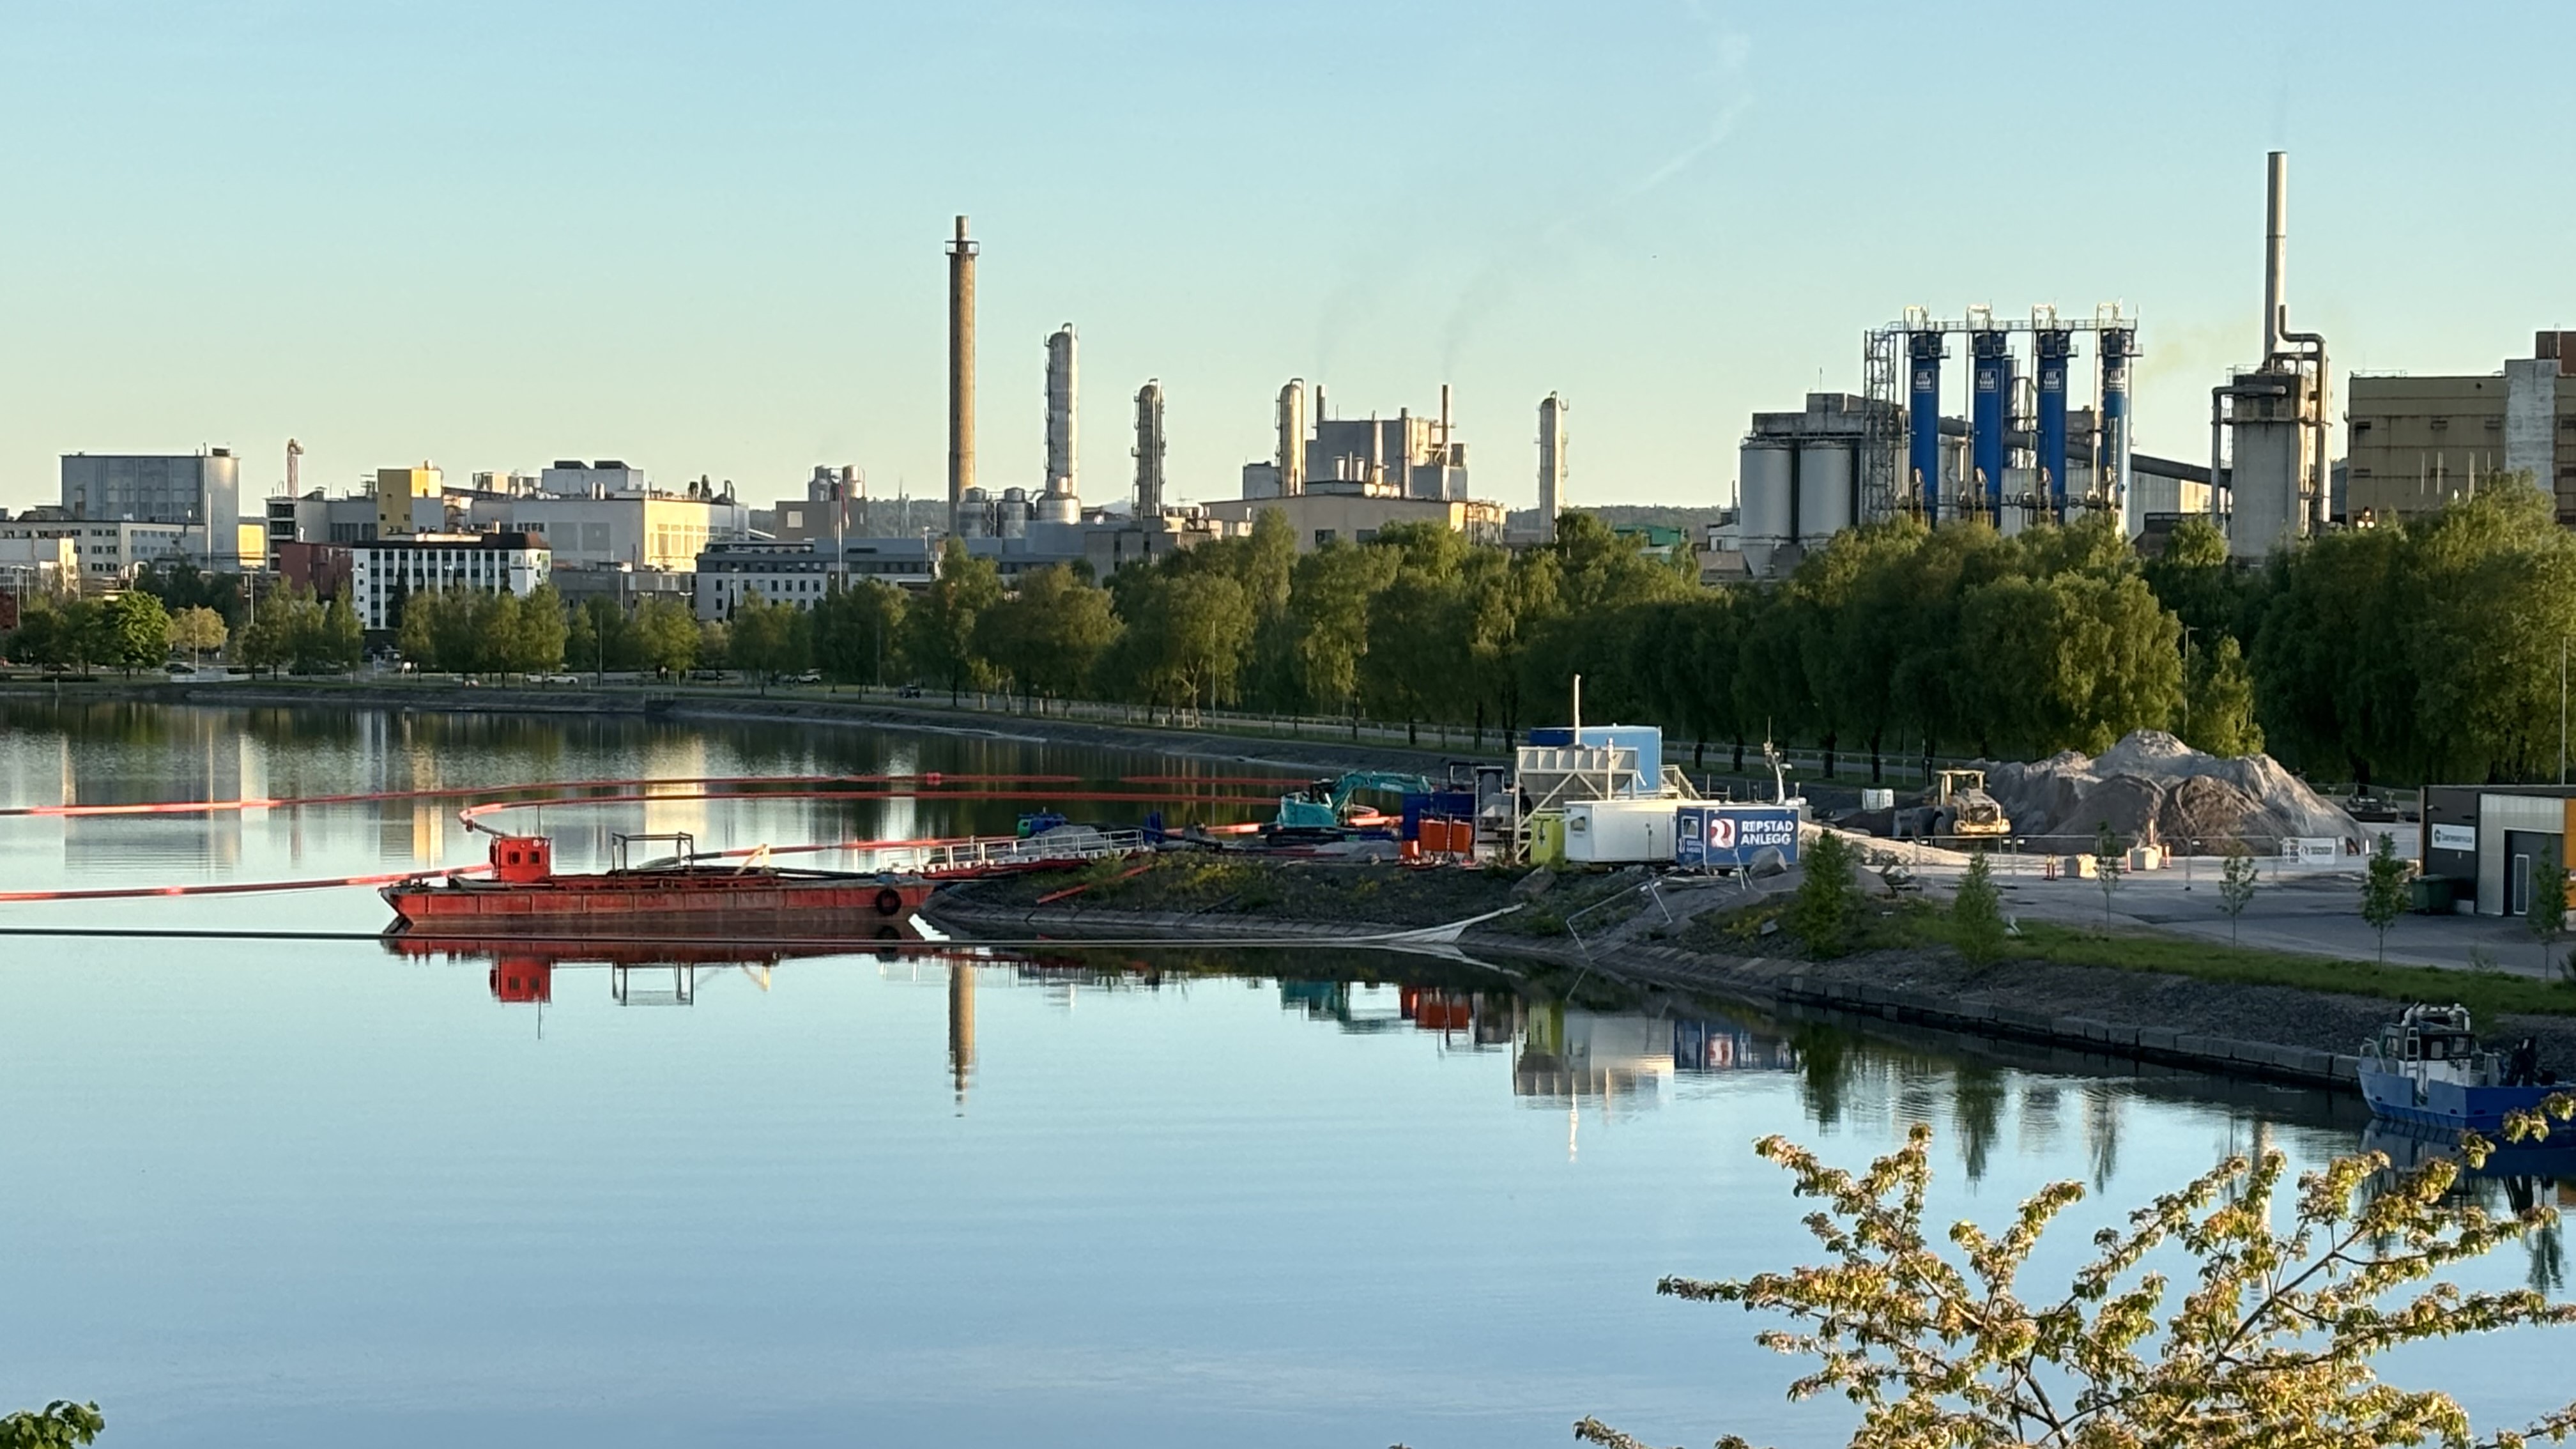 landskapsbilde, innsjø foran, anleggsområde med anleggsmaskiner, i bakgrunnen industripark